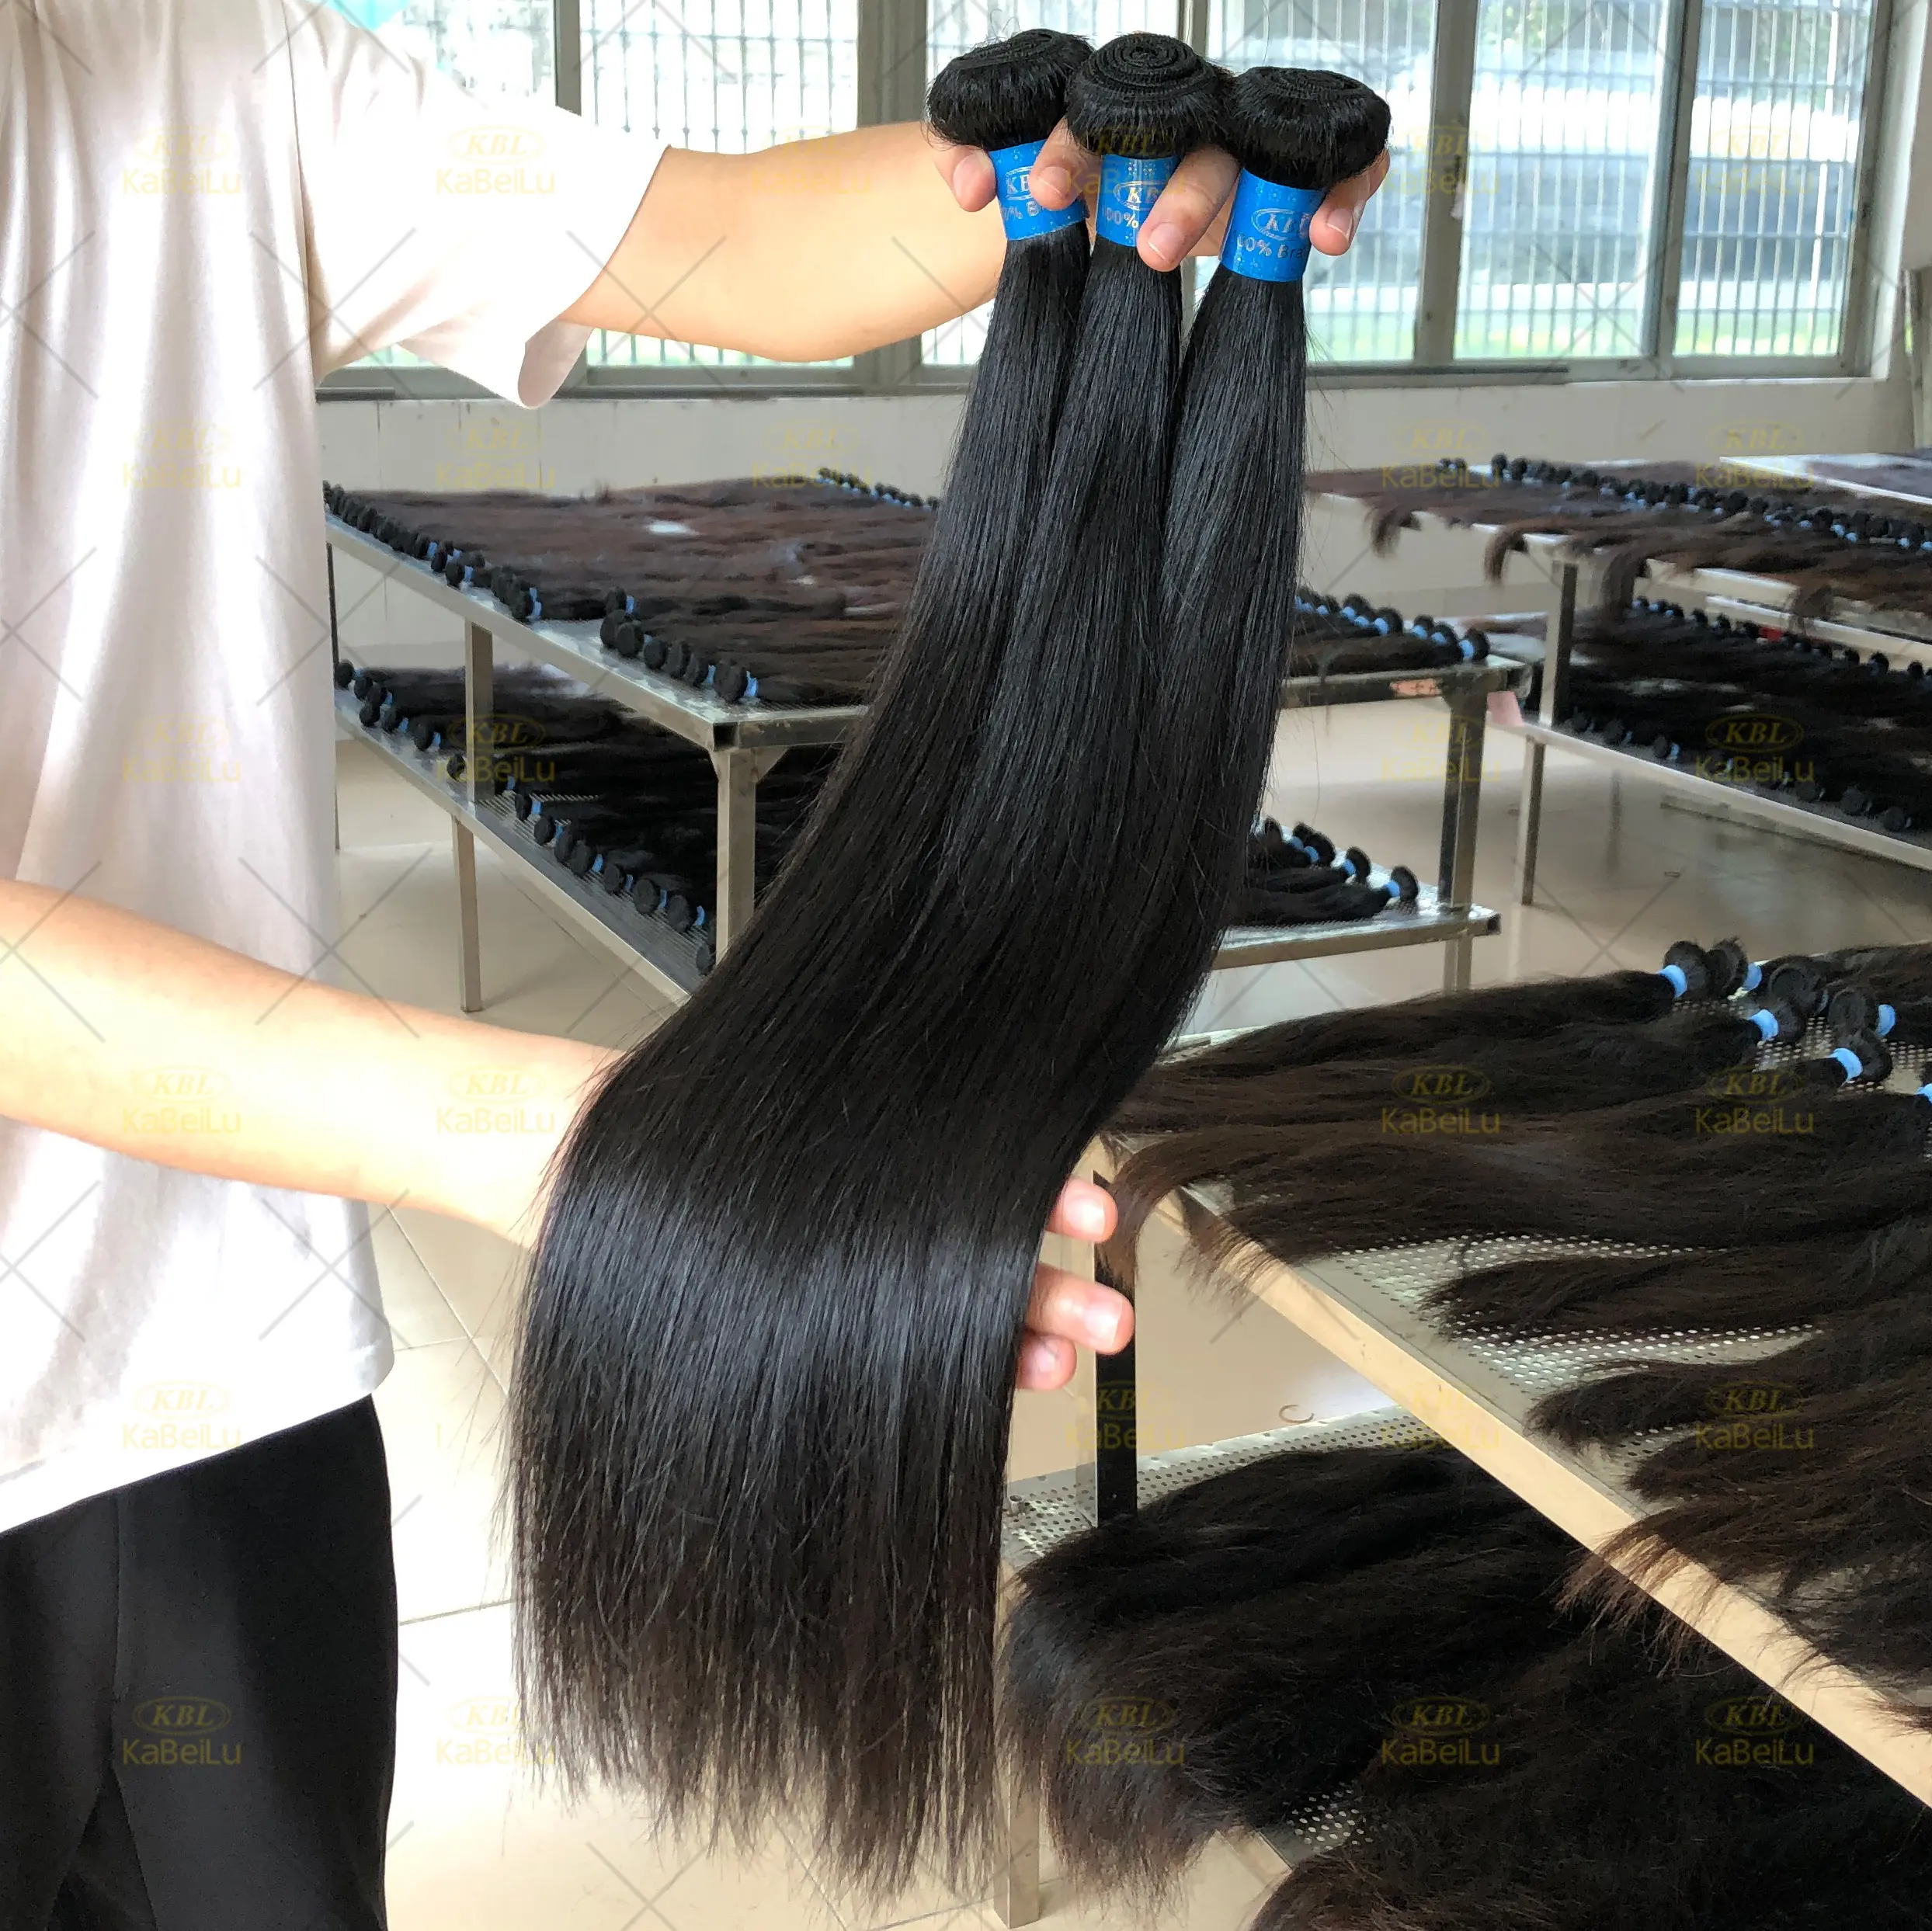 Coração russa cabelo remy barato extensão do cabelo, extensão do cabelo de dois tons, extensão de cabelo humano para trama de pele